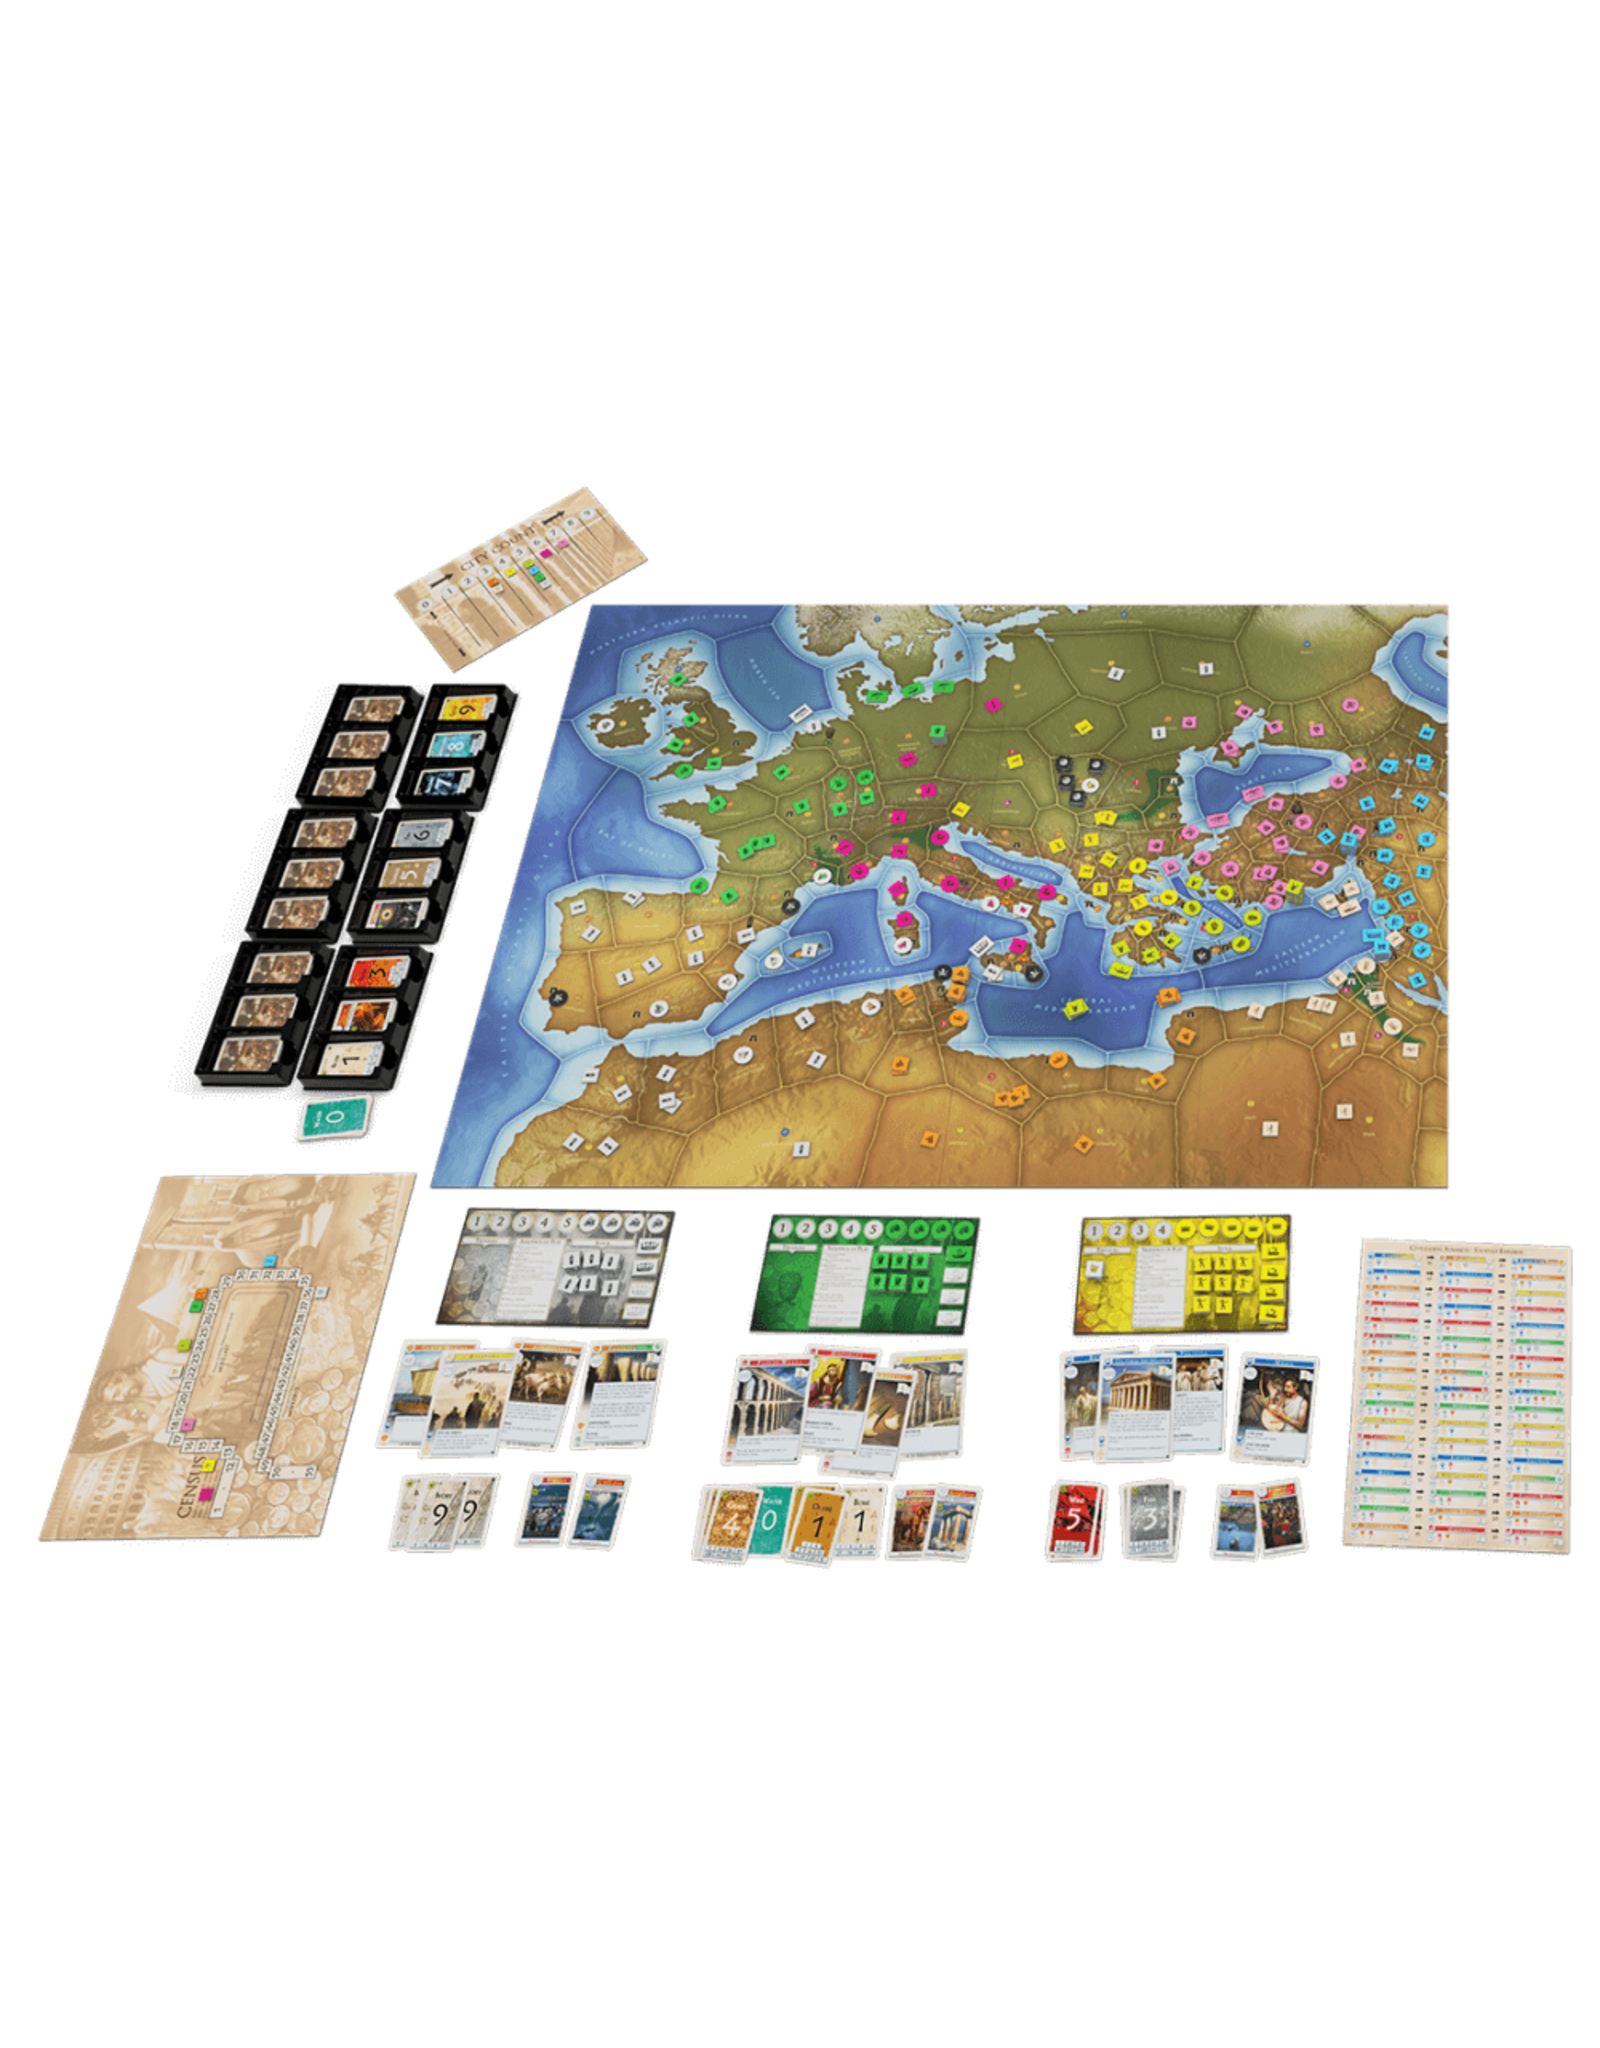 999 Games 999 Games: Western Empires - Bordspel